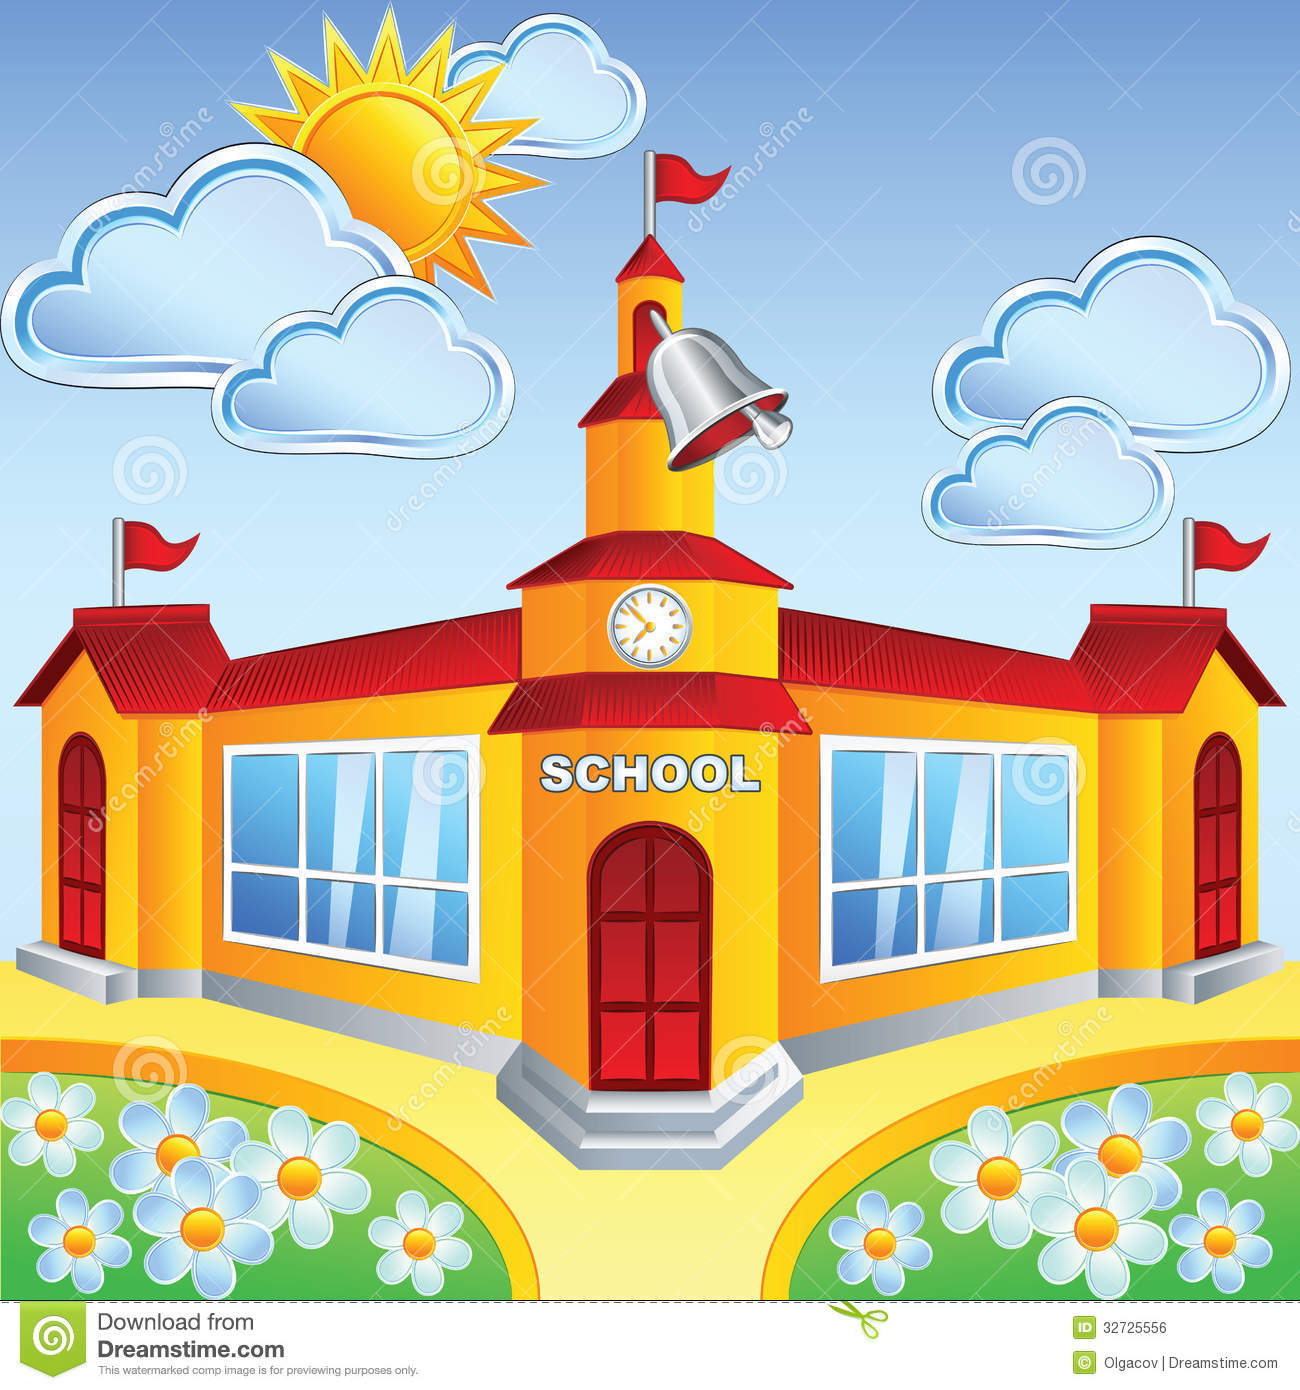 Vector Cartoon School Building Royalty Free Stock Image   Image    